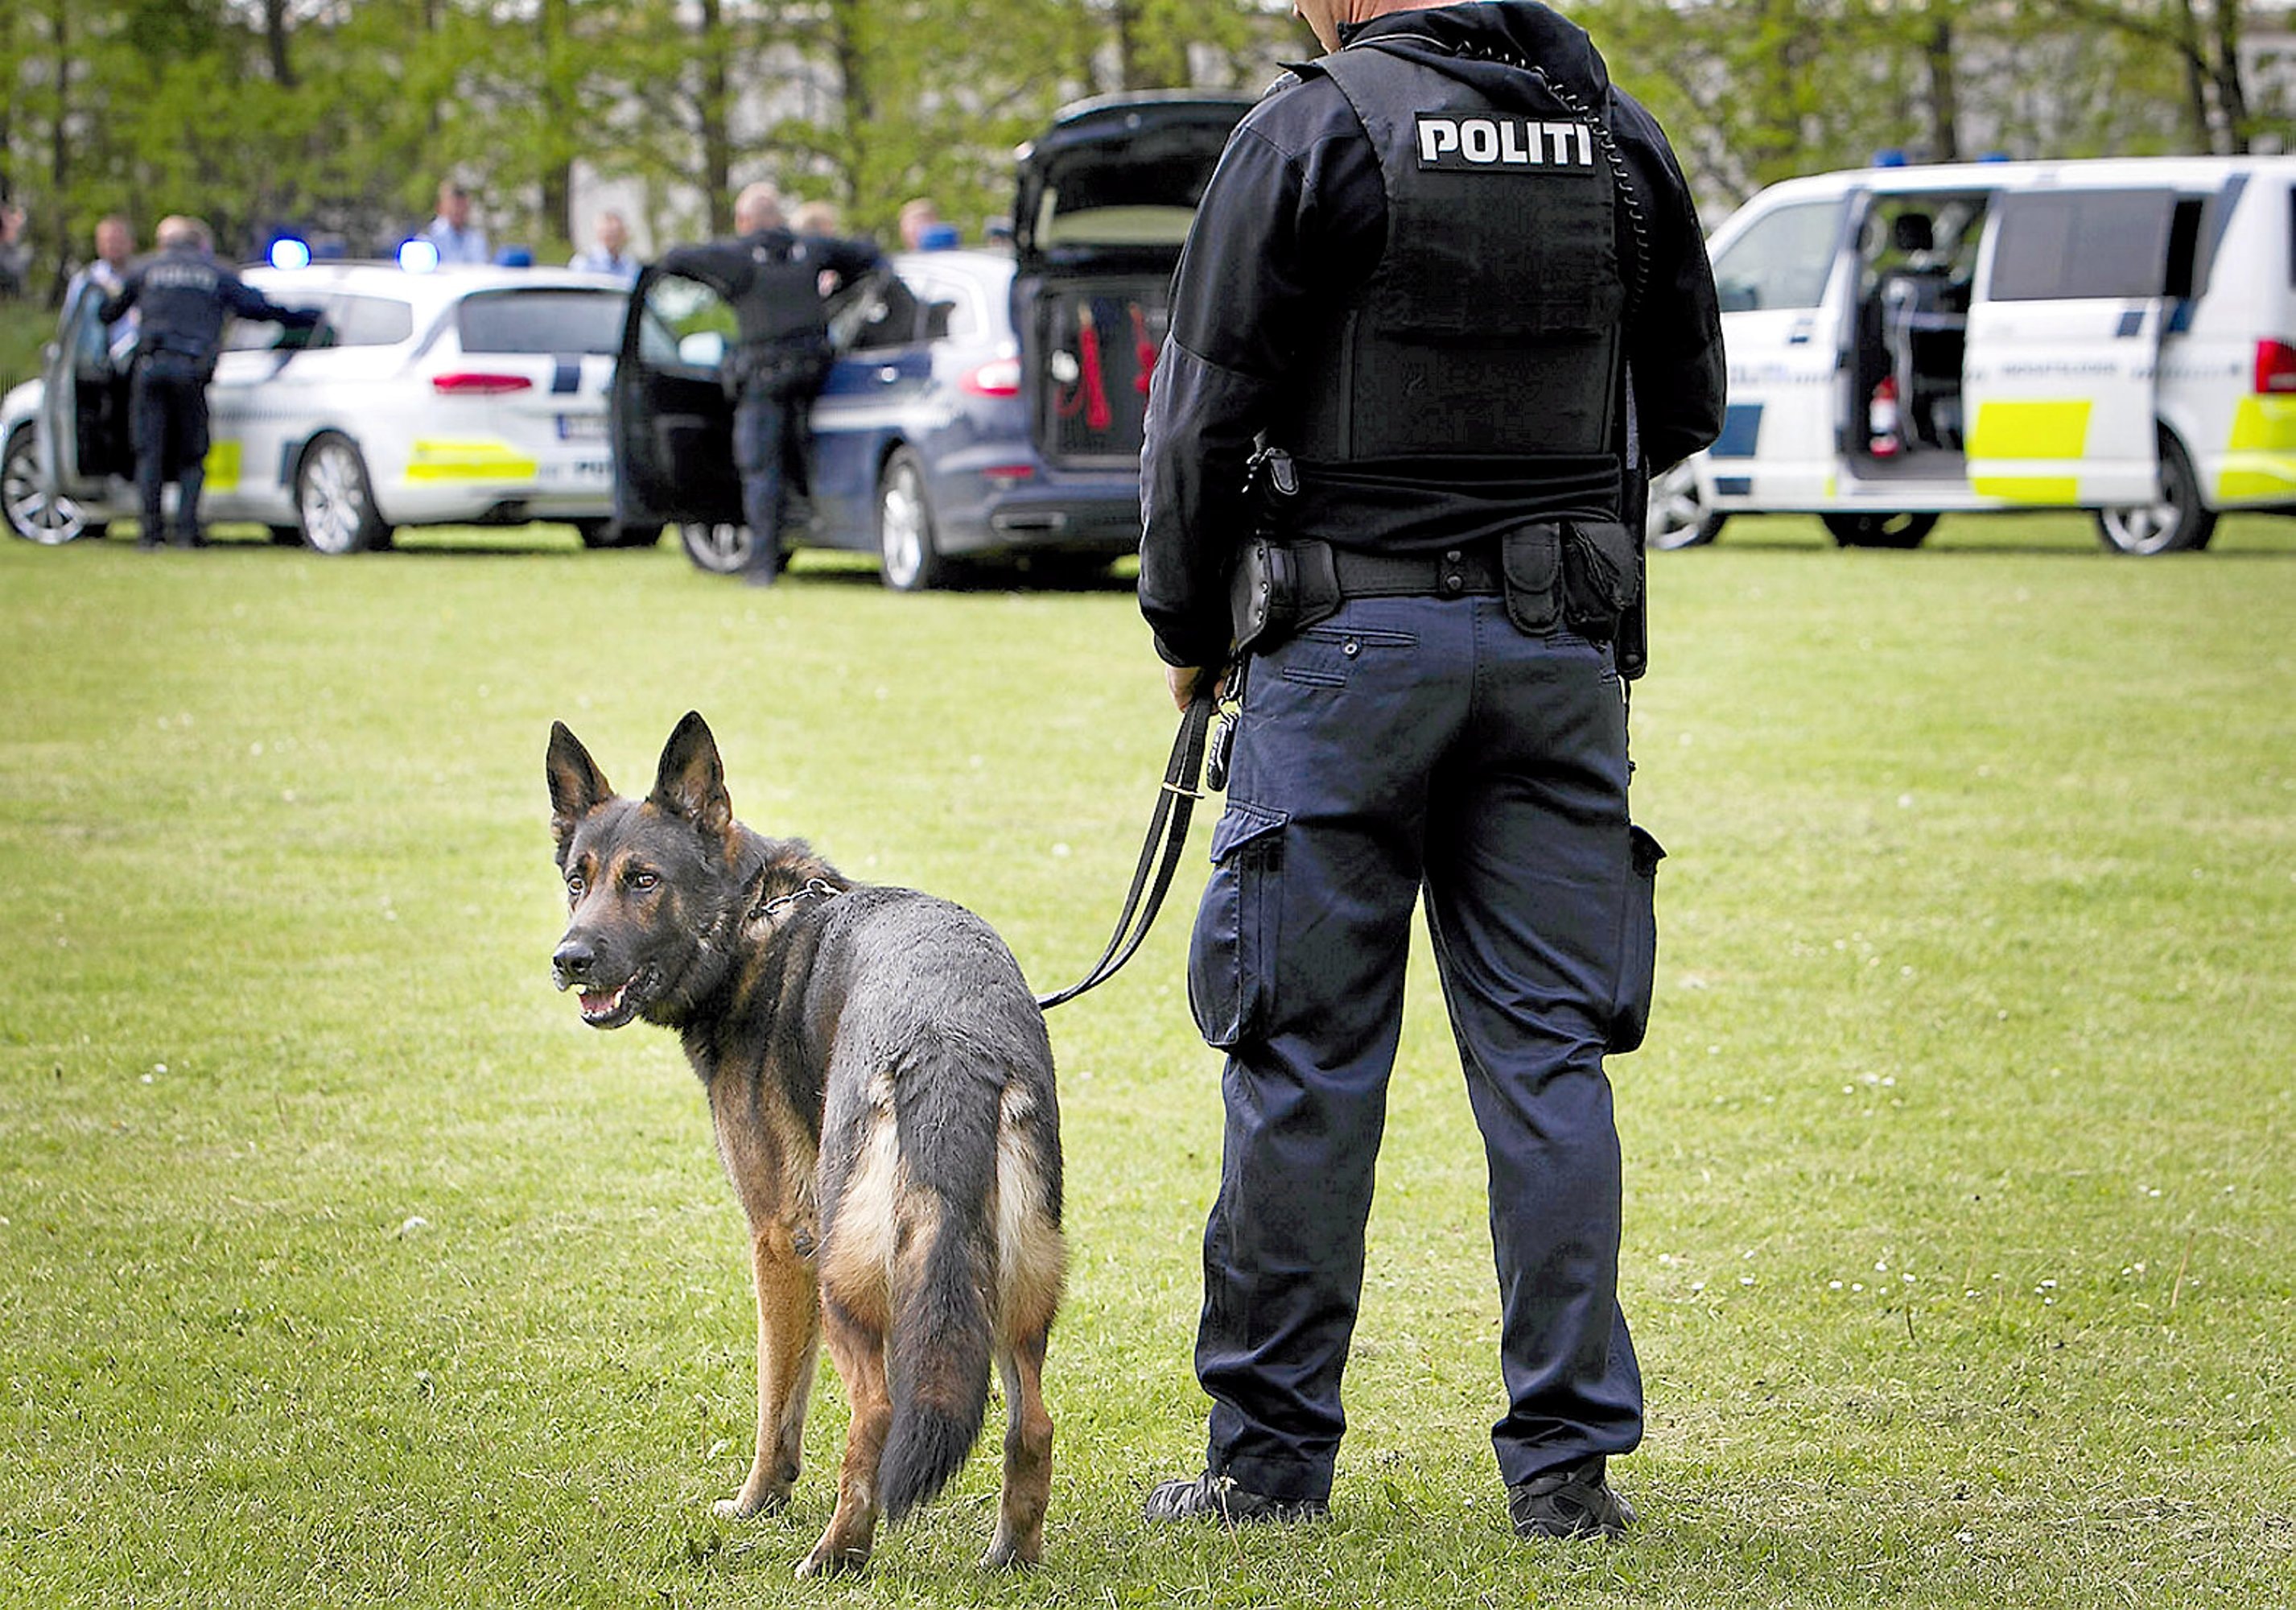 Fornyet søgning i sagen drabet i Elverparken Nyheder | Københavns Vestegns Politi